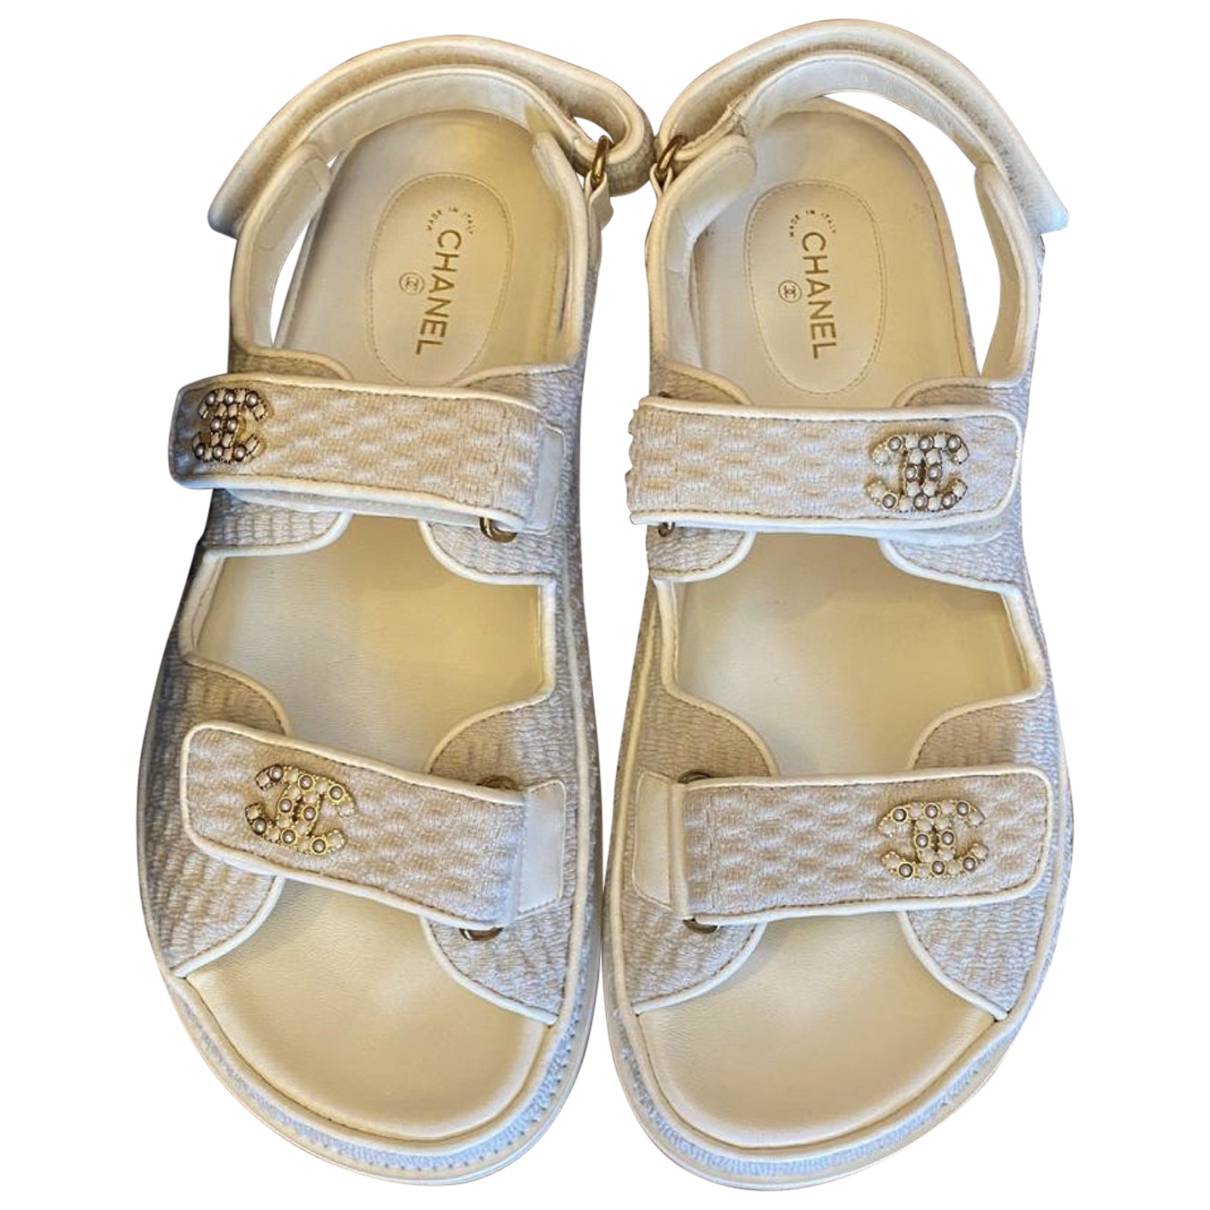 Dad sandals cloth sandal Chanel Ecru size 41 EU in Cloth - 25166963